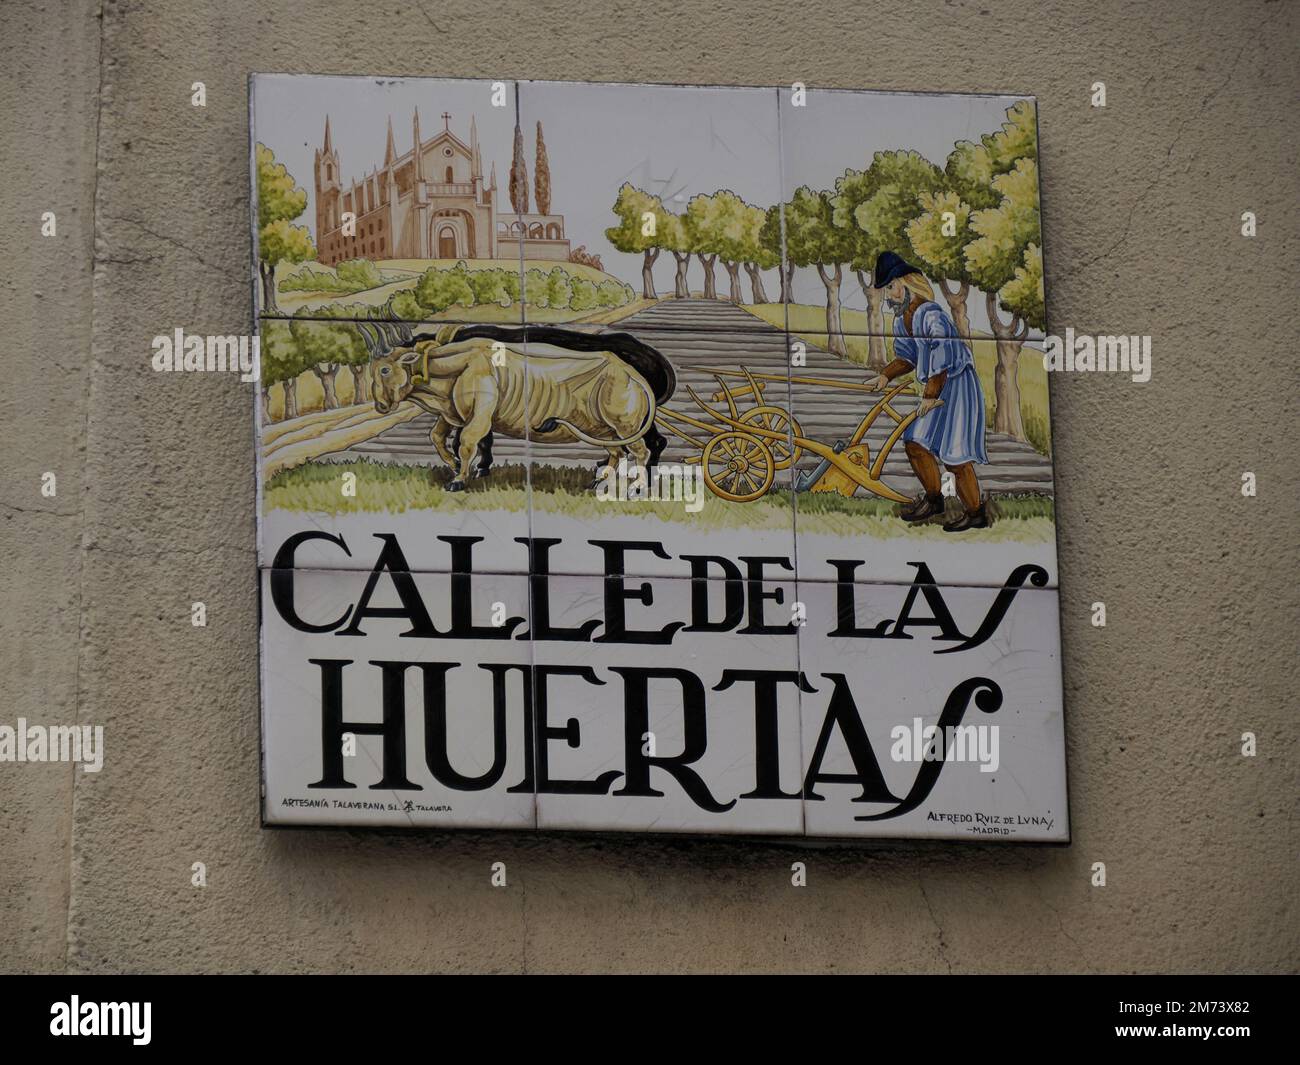 MADRID, ESPAGNE - 14 DÉCEMBRE 2022: Rue nom calle de las huertas signe à Madrid, capitale de l'Espagne réputée pour ses riches dépôts d'Europe Banque D'Images